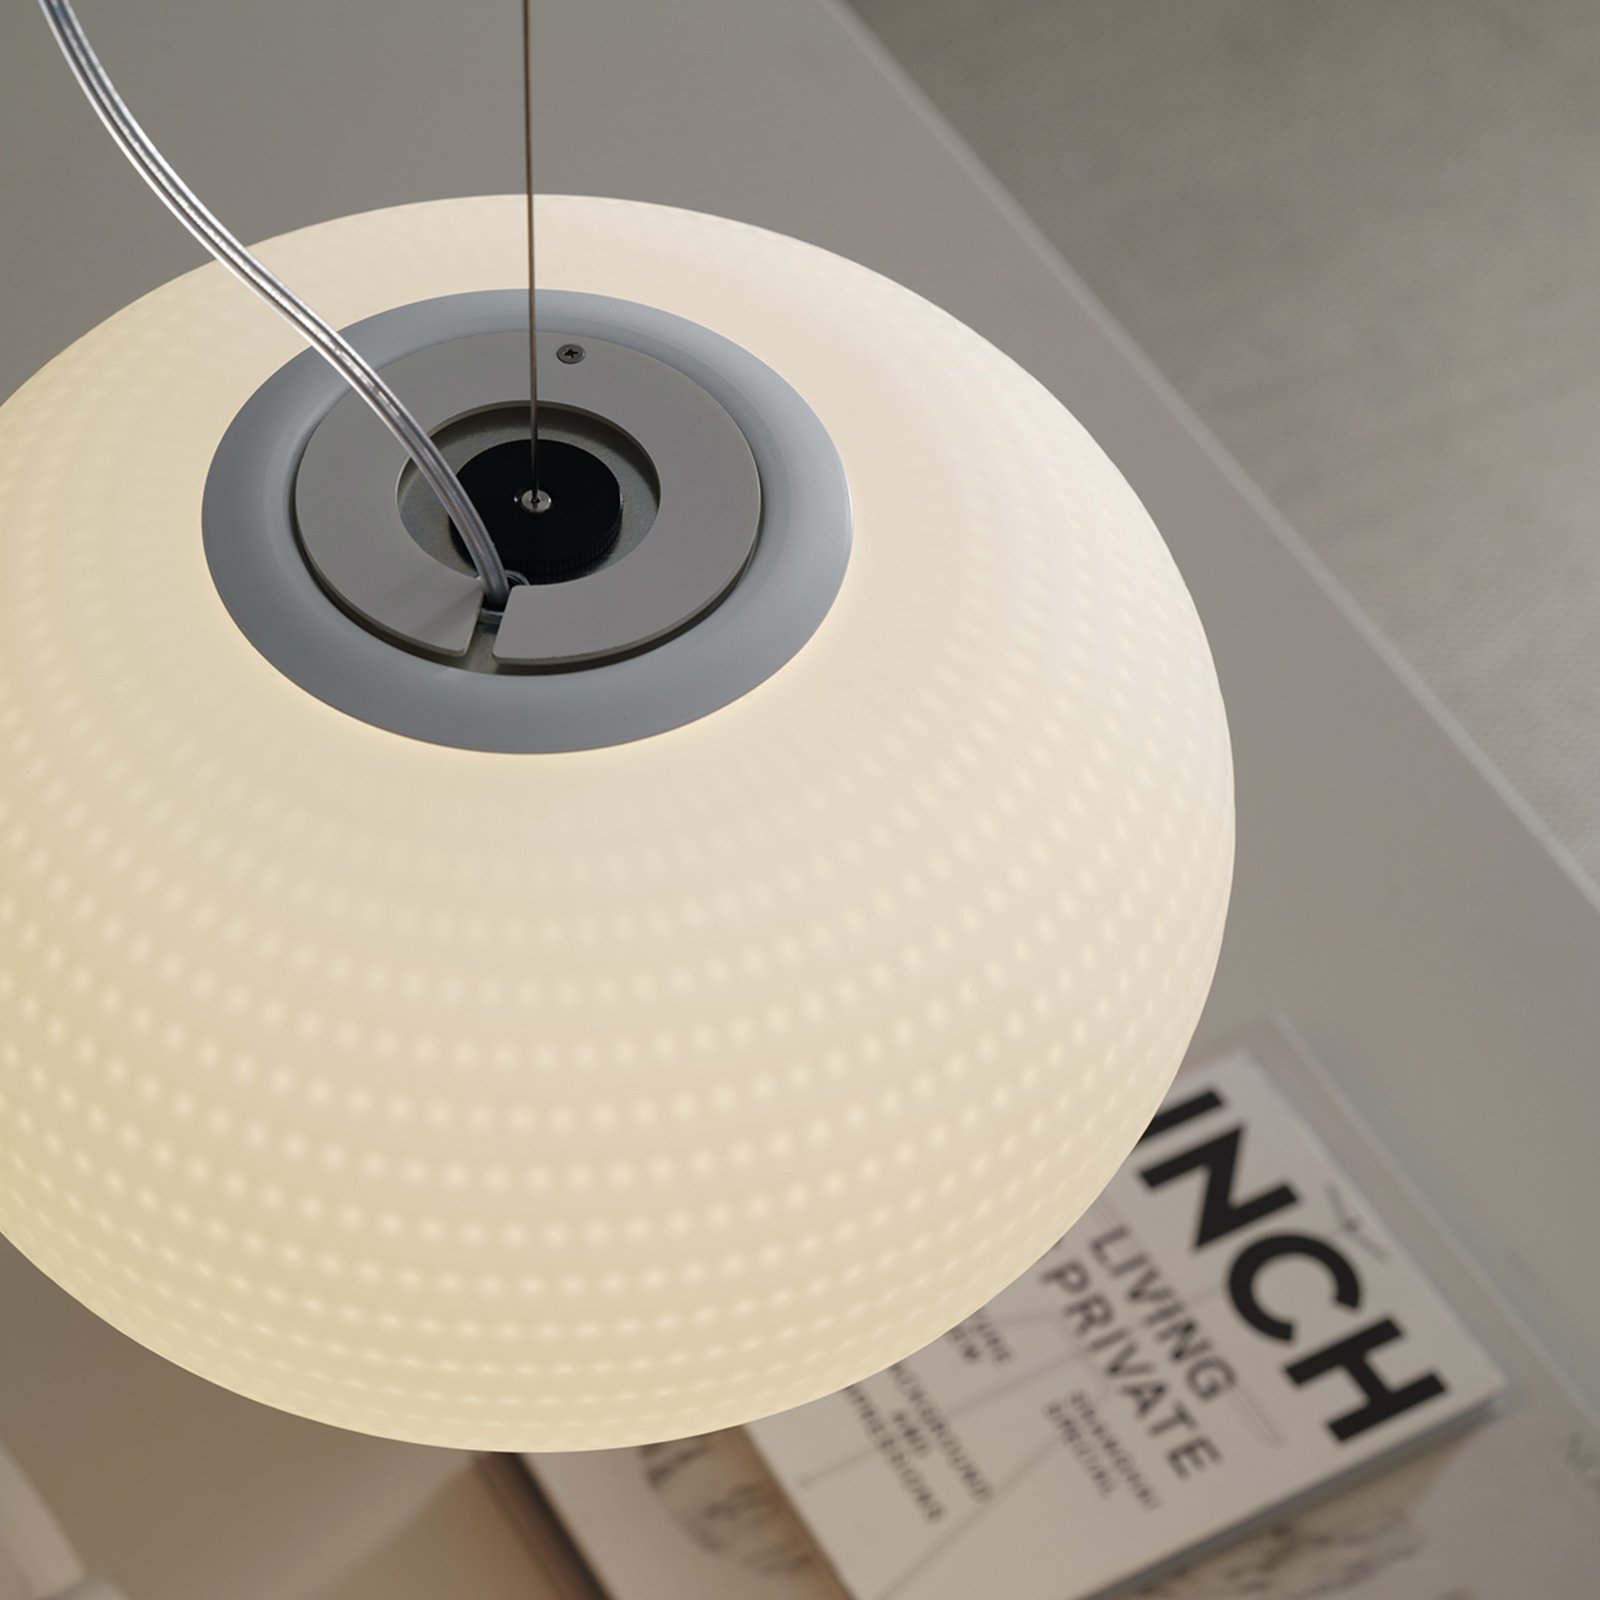 Bianca - designer LED hanging light